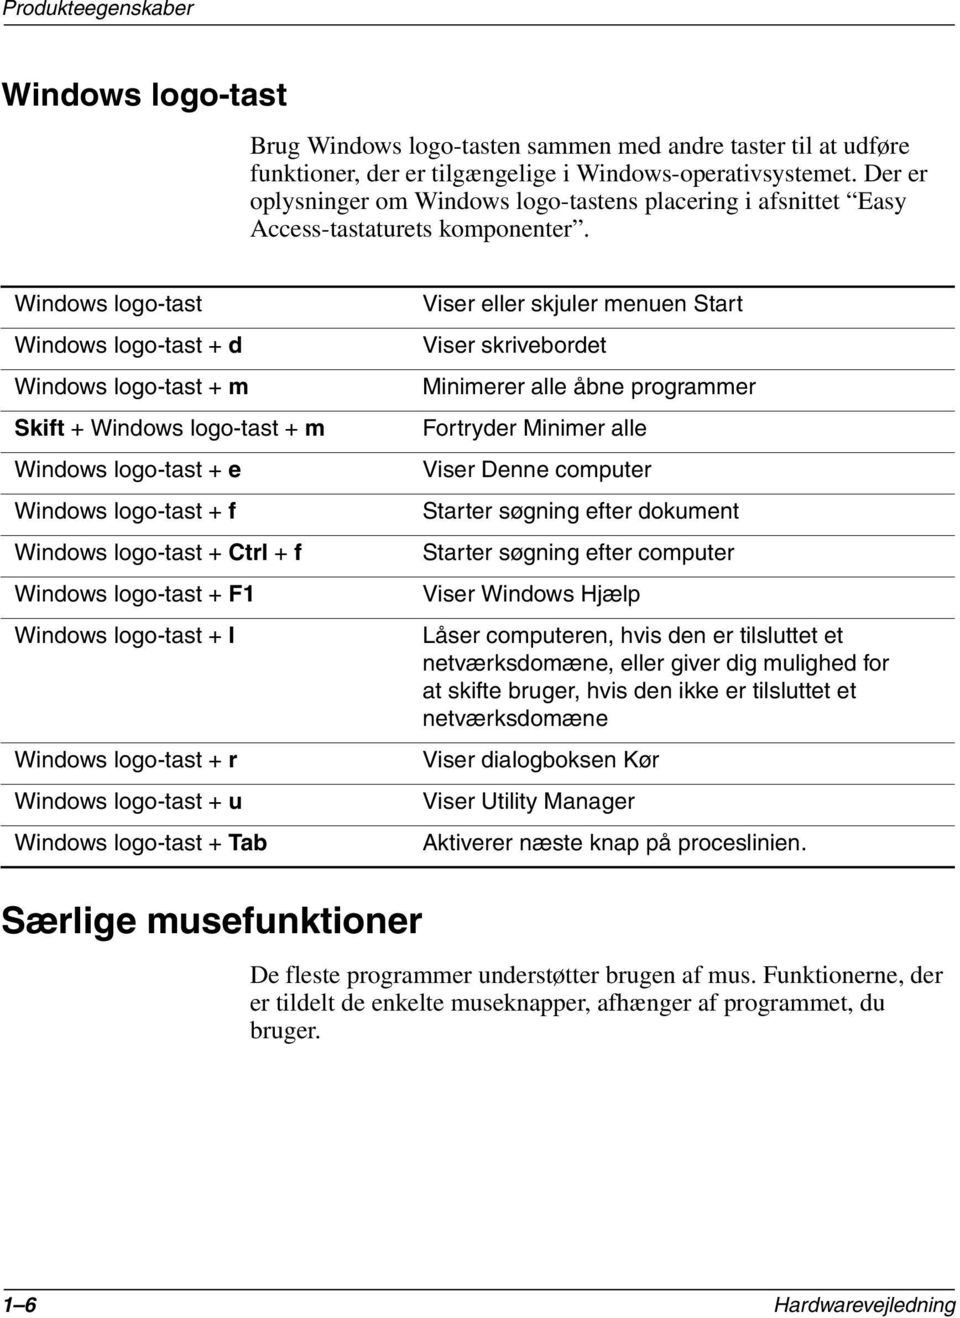 Windows logo-tast Windows logo-tast + d Windows logo-tast + m Skift + Windows logo-tast + m Windows logo-tast + e Windows logo-tast + f Windows logo-tast + Ctrl + f Windows logo-tast + F1 Windows